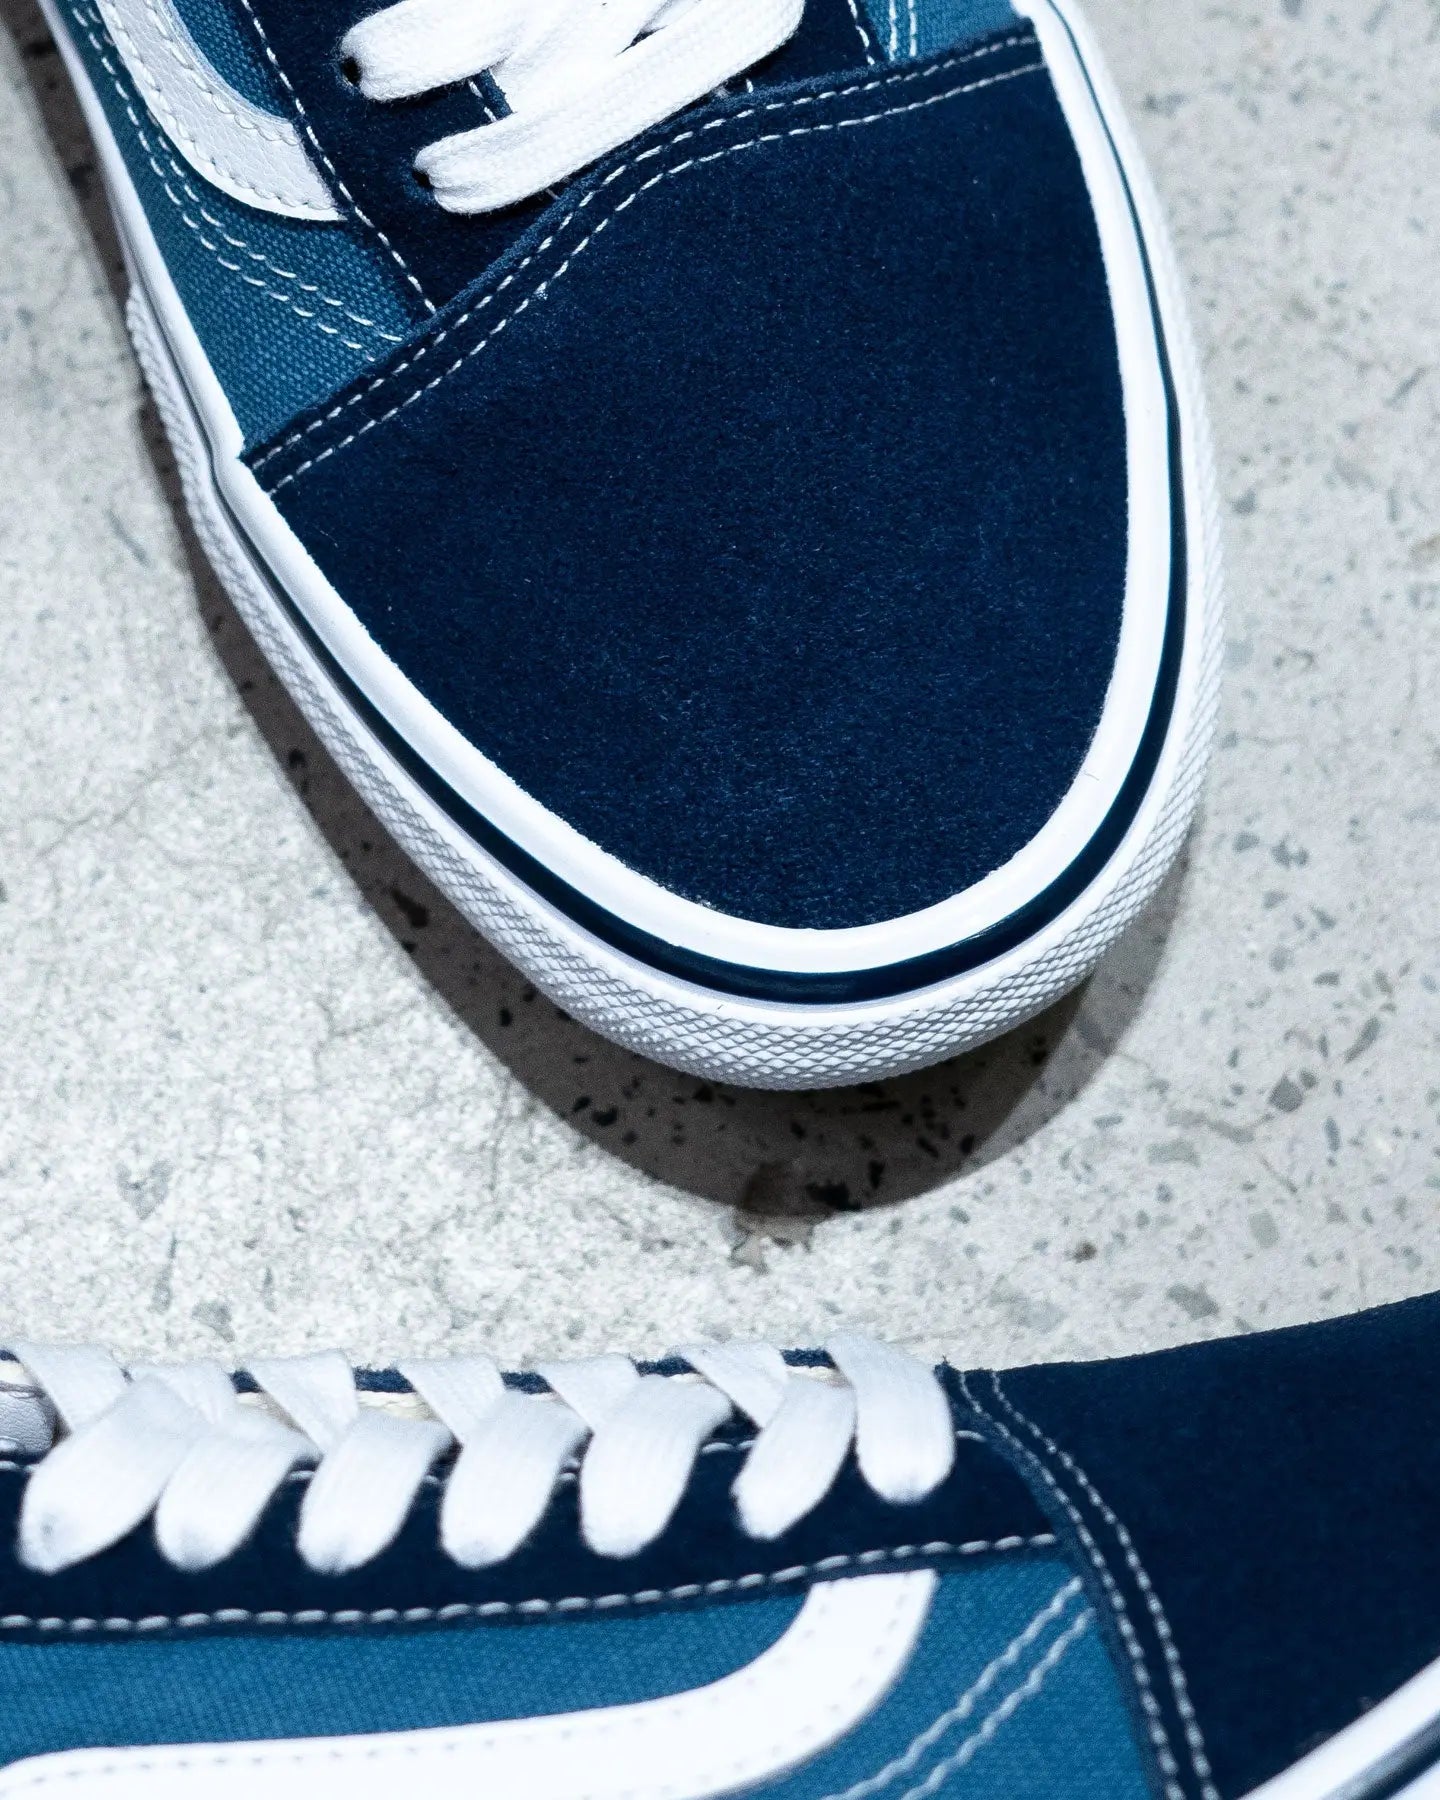 Vans Skate Old Skool - Navy / White Footwear